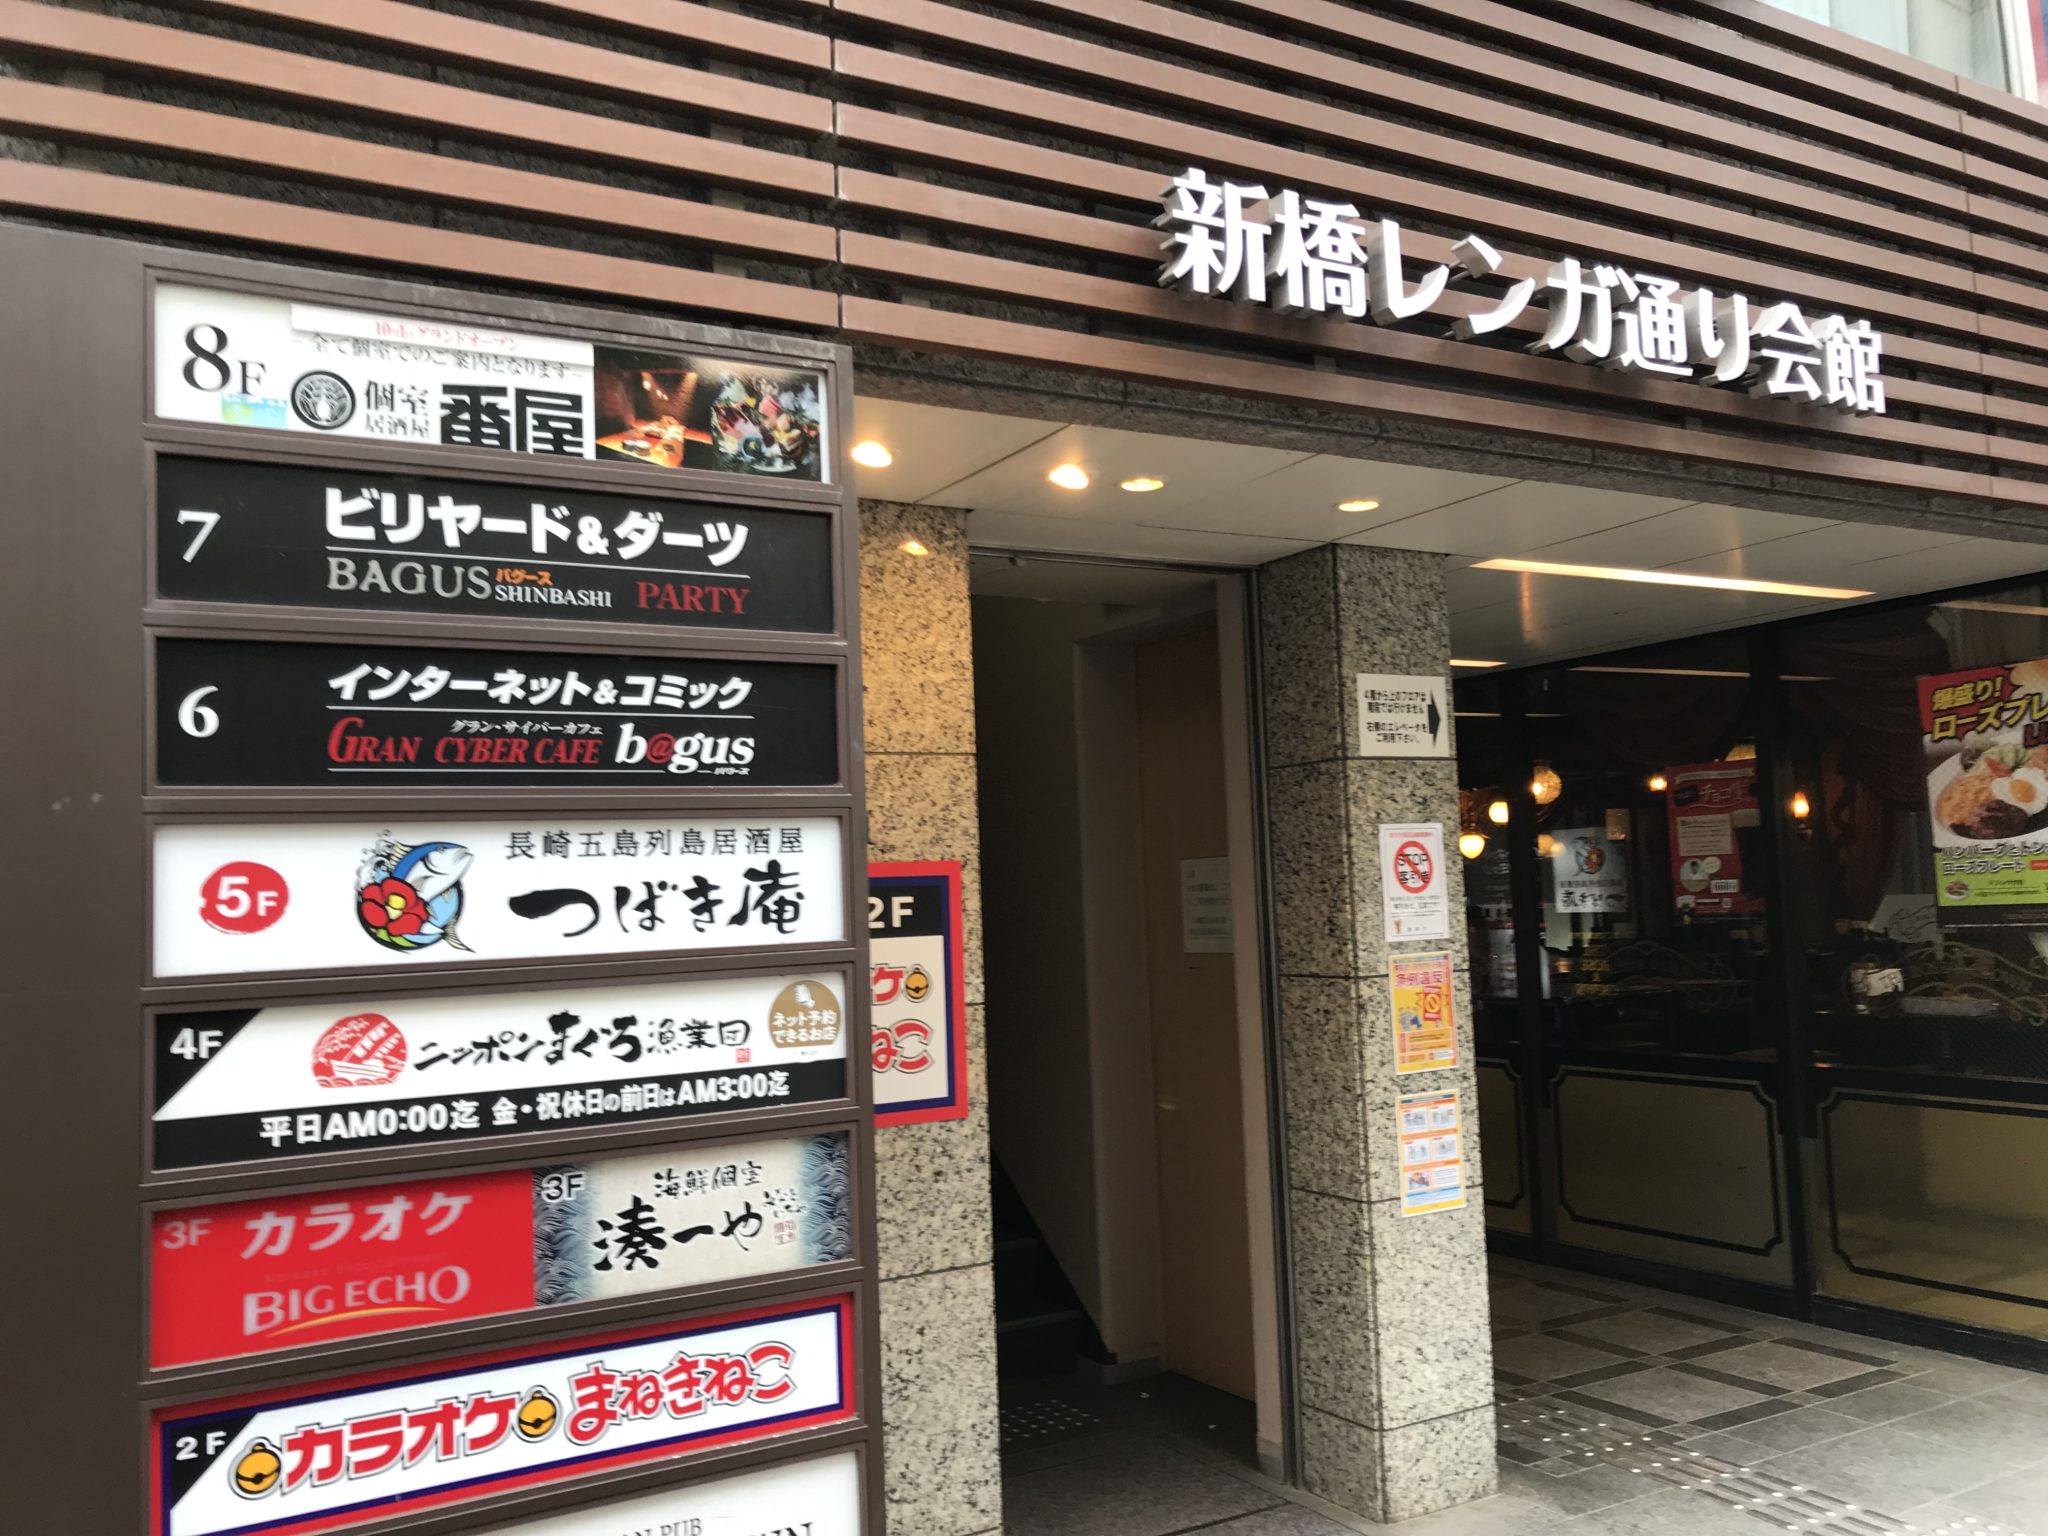 新橋駅から徒歩3分 グランサイバーカフェ バグース新橋店をレポート 日本全国のネカフェ 漫画喫茶マップのヒマップ